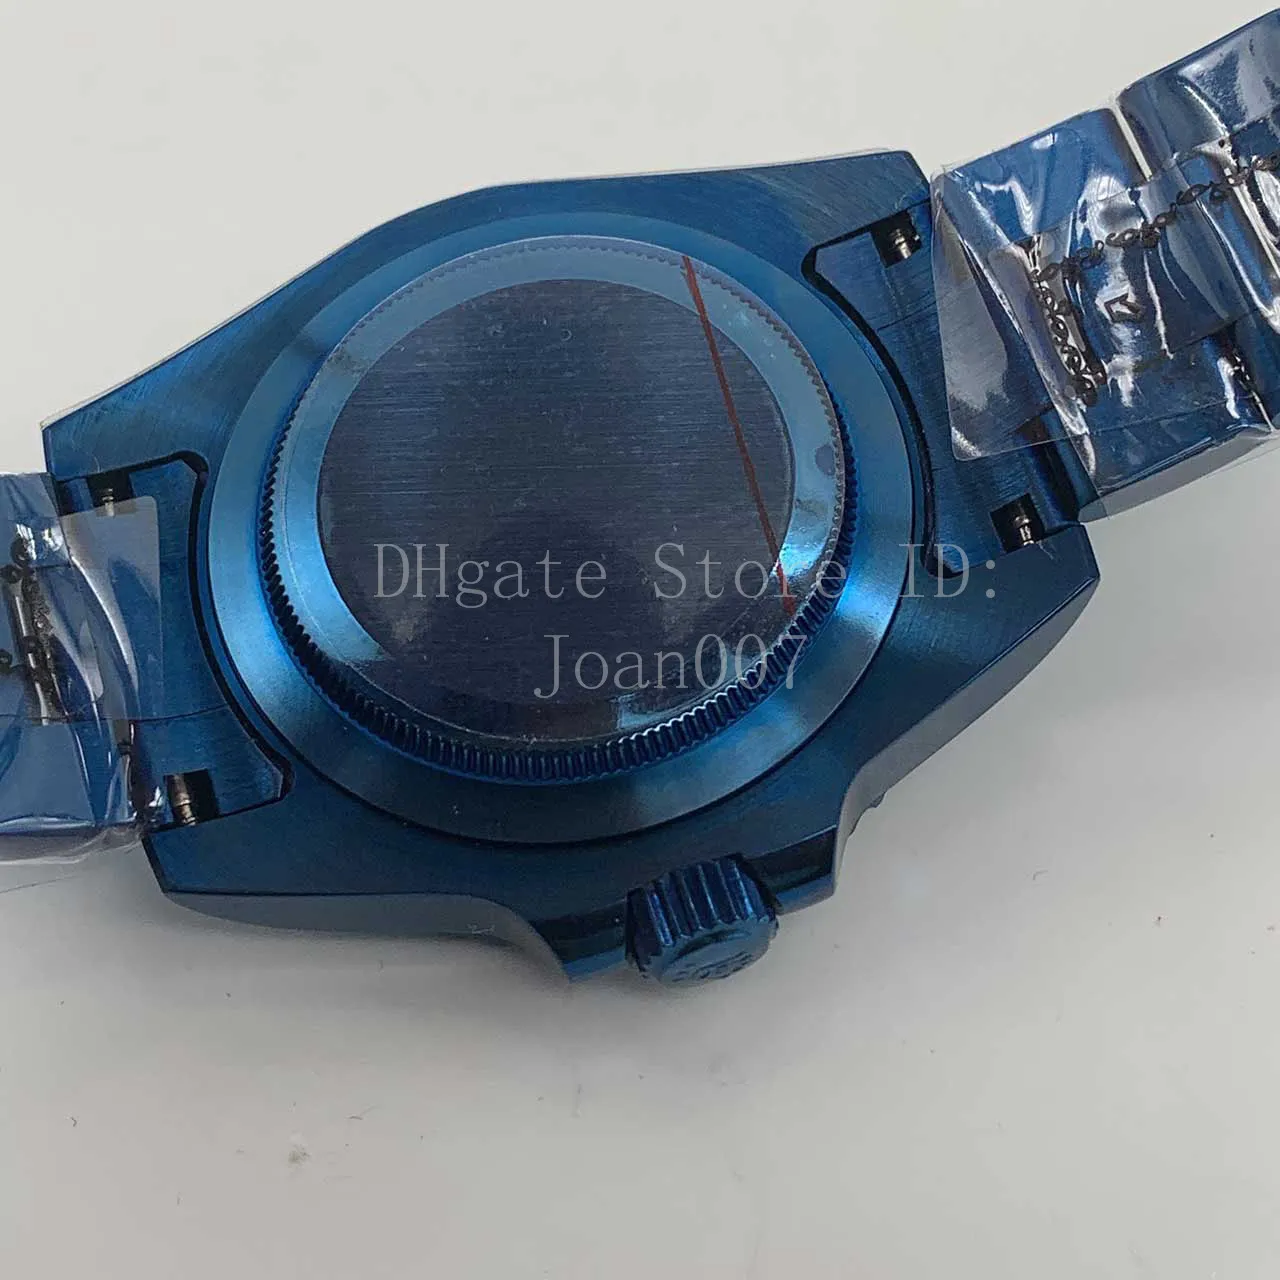 nieuwe herenhorloge zwarte keramische bezel sub horloges glanzend blauw plating roestvrij staal automatisch mechanisch herenhorloges 40 mm mad209g